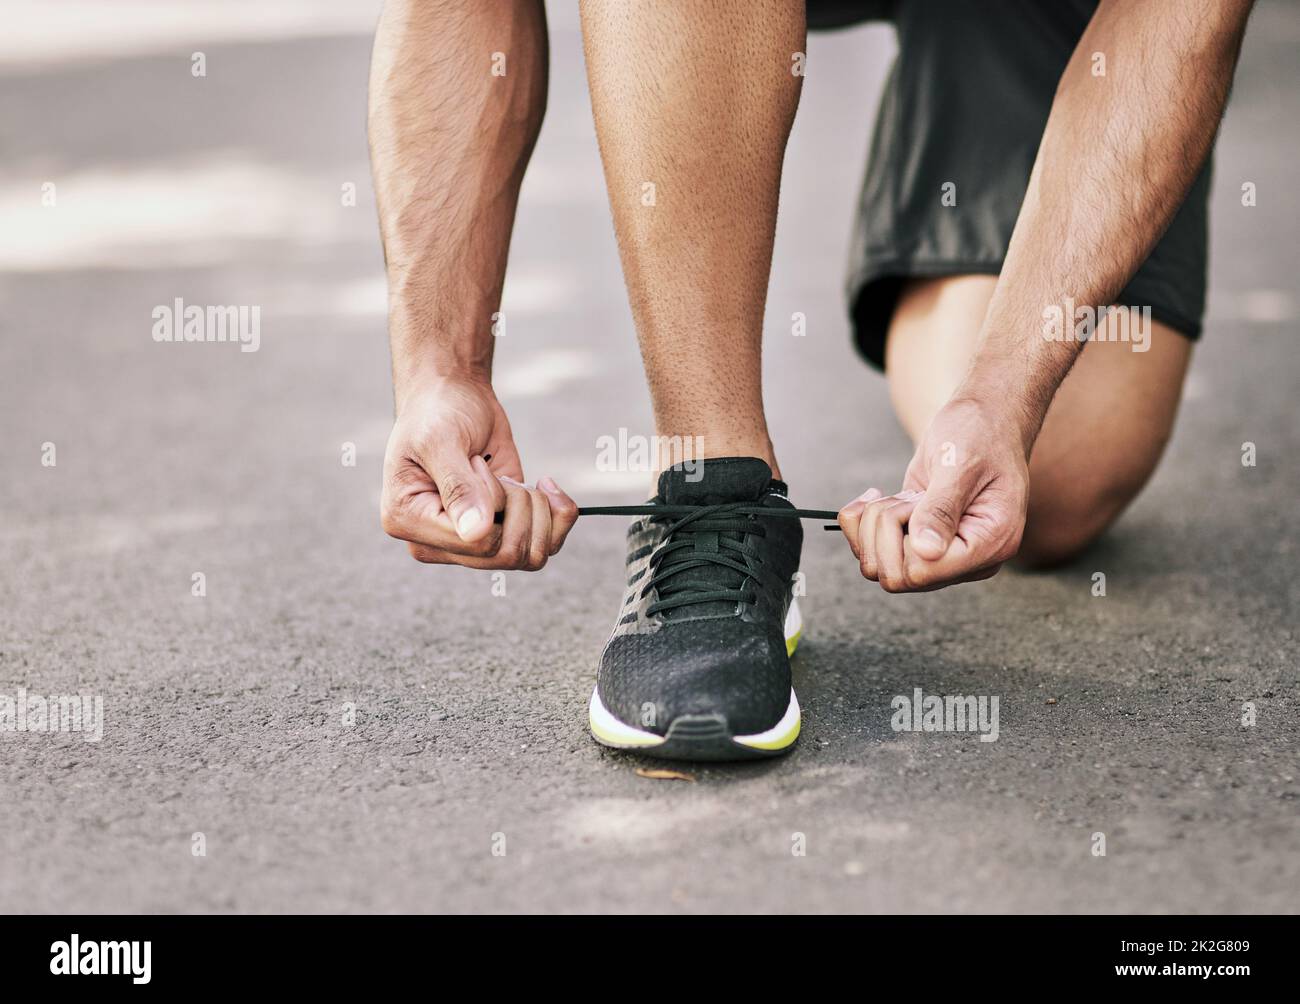 Bereit zum Rennen. Aufnahme eines nicht identifizierbaren jungen Sportlers, der seine Schnürsenkel vor einem Lauf festbindet. Stockfoto